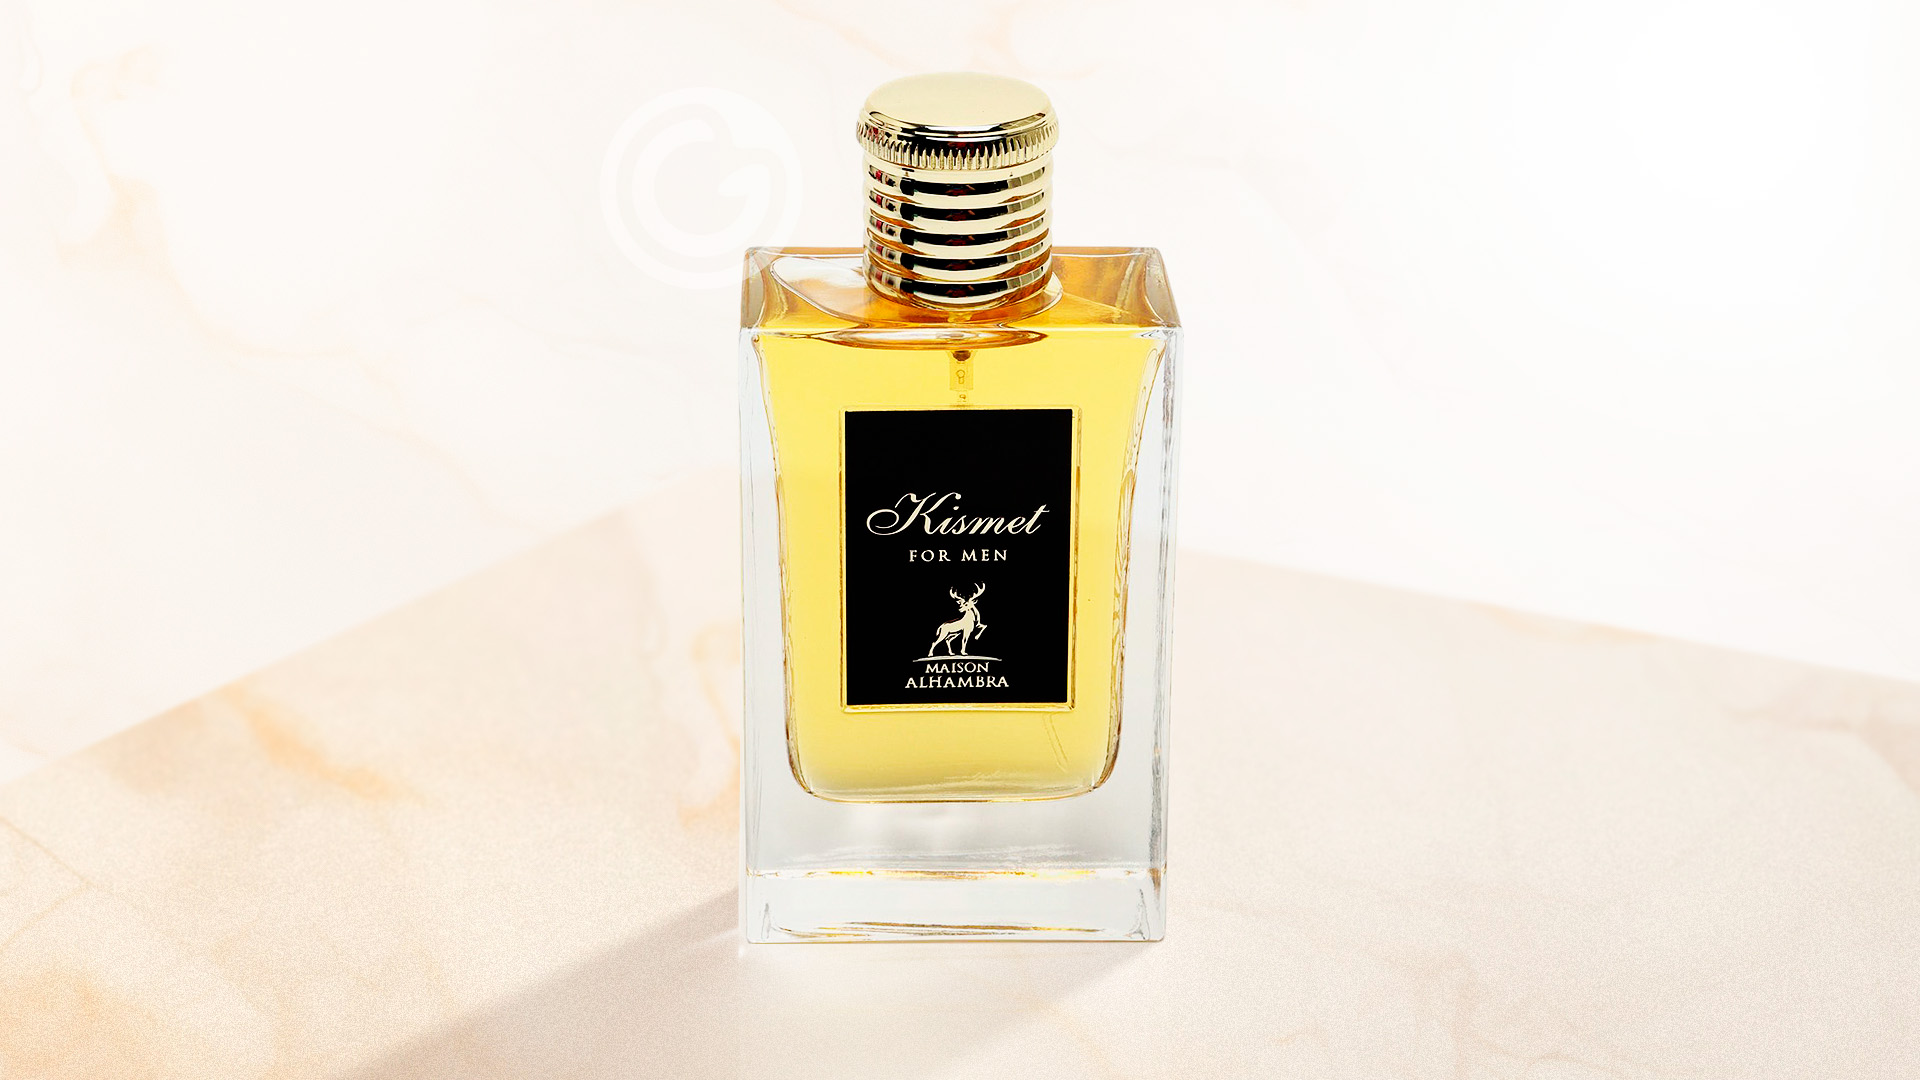 Kismet for Men Maison Alhambra Eau de Parfum Masculino